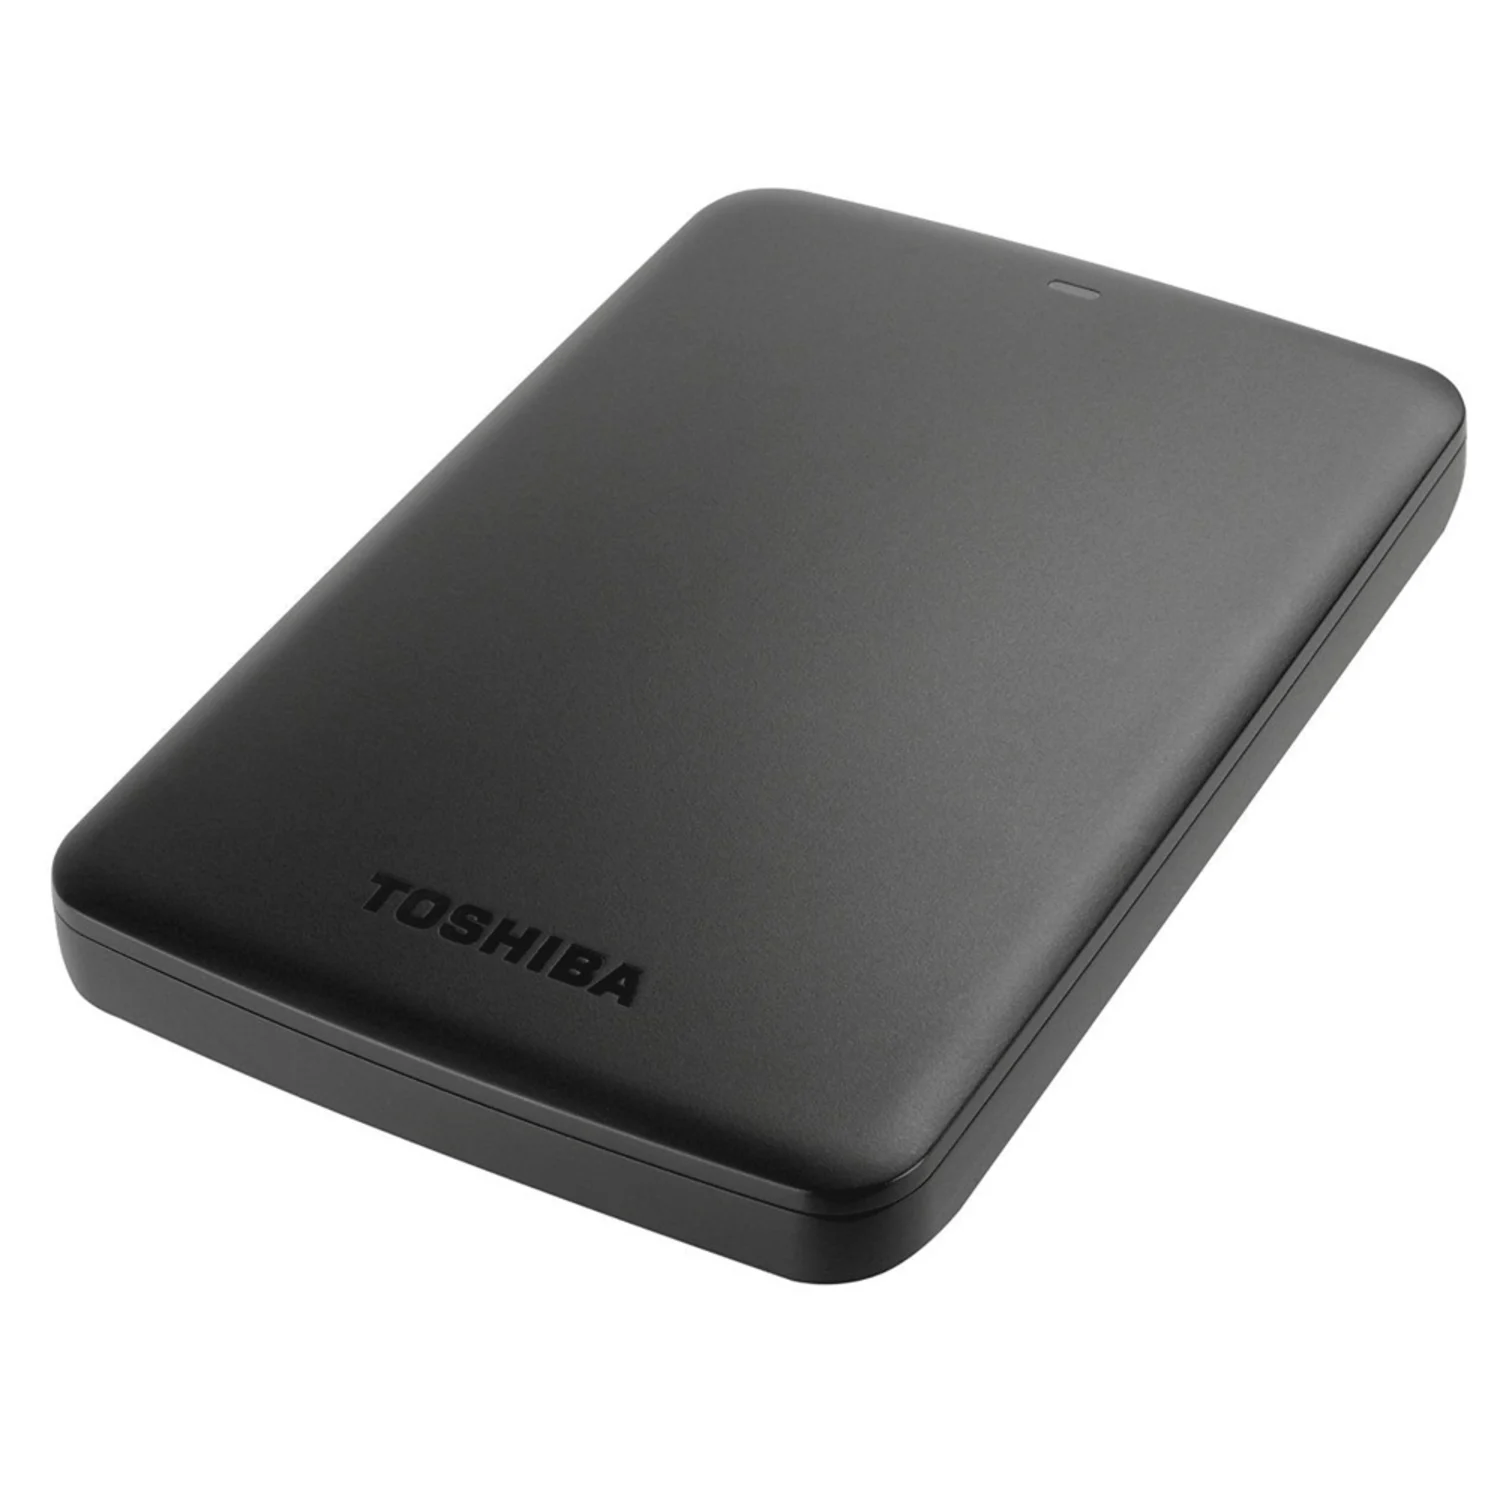 HD Externo Toshiba Canvio Basics USB 3.0 - Preto (HDTB410XK3AA)